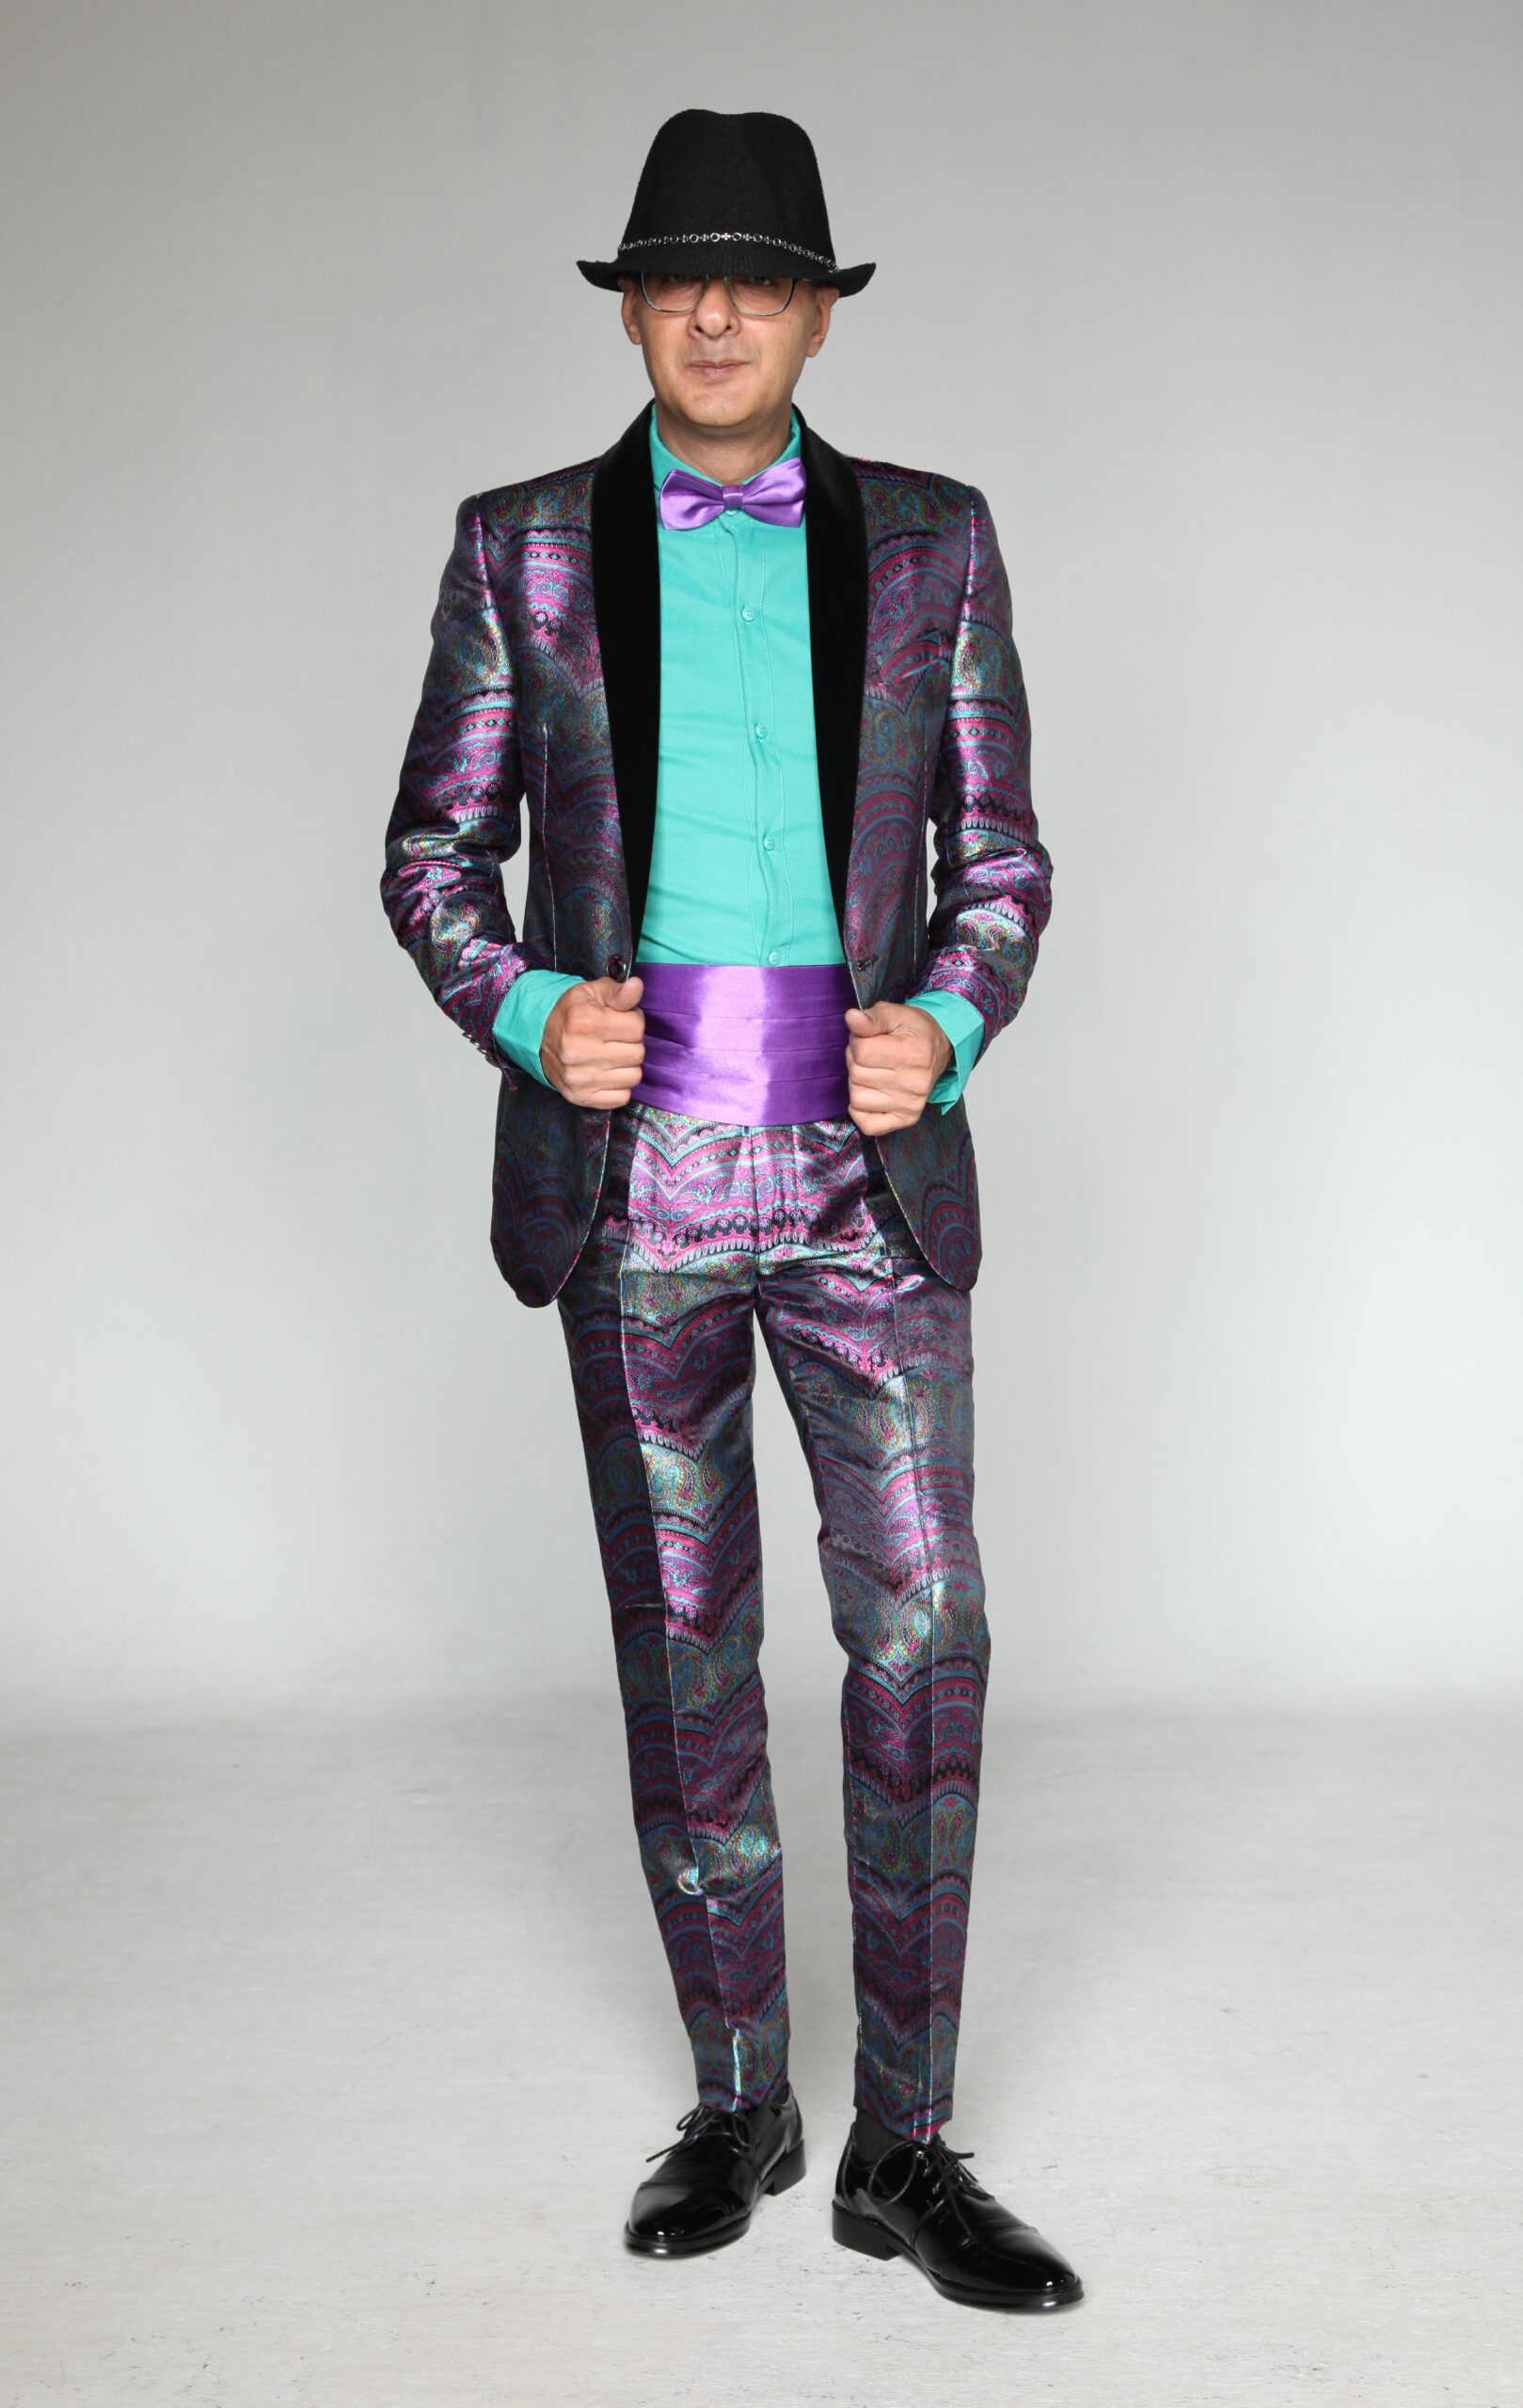 Mst 5047 01 Rent Rental Hire Tuxedo Suit Black Tie Suit Designer Suits Shop Tailor Tailors Singapore Wedding